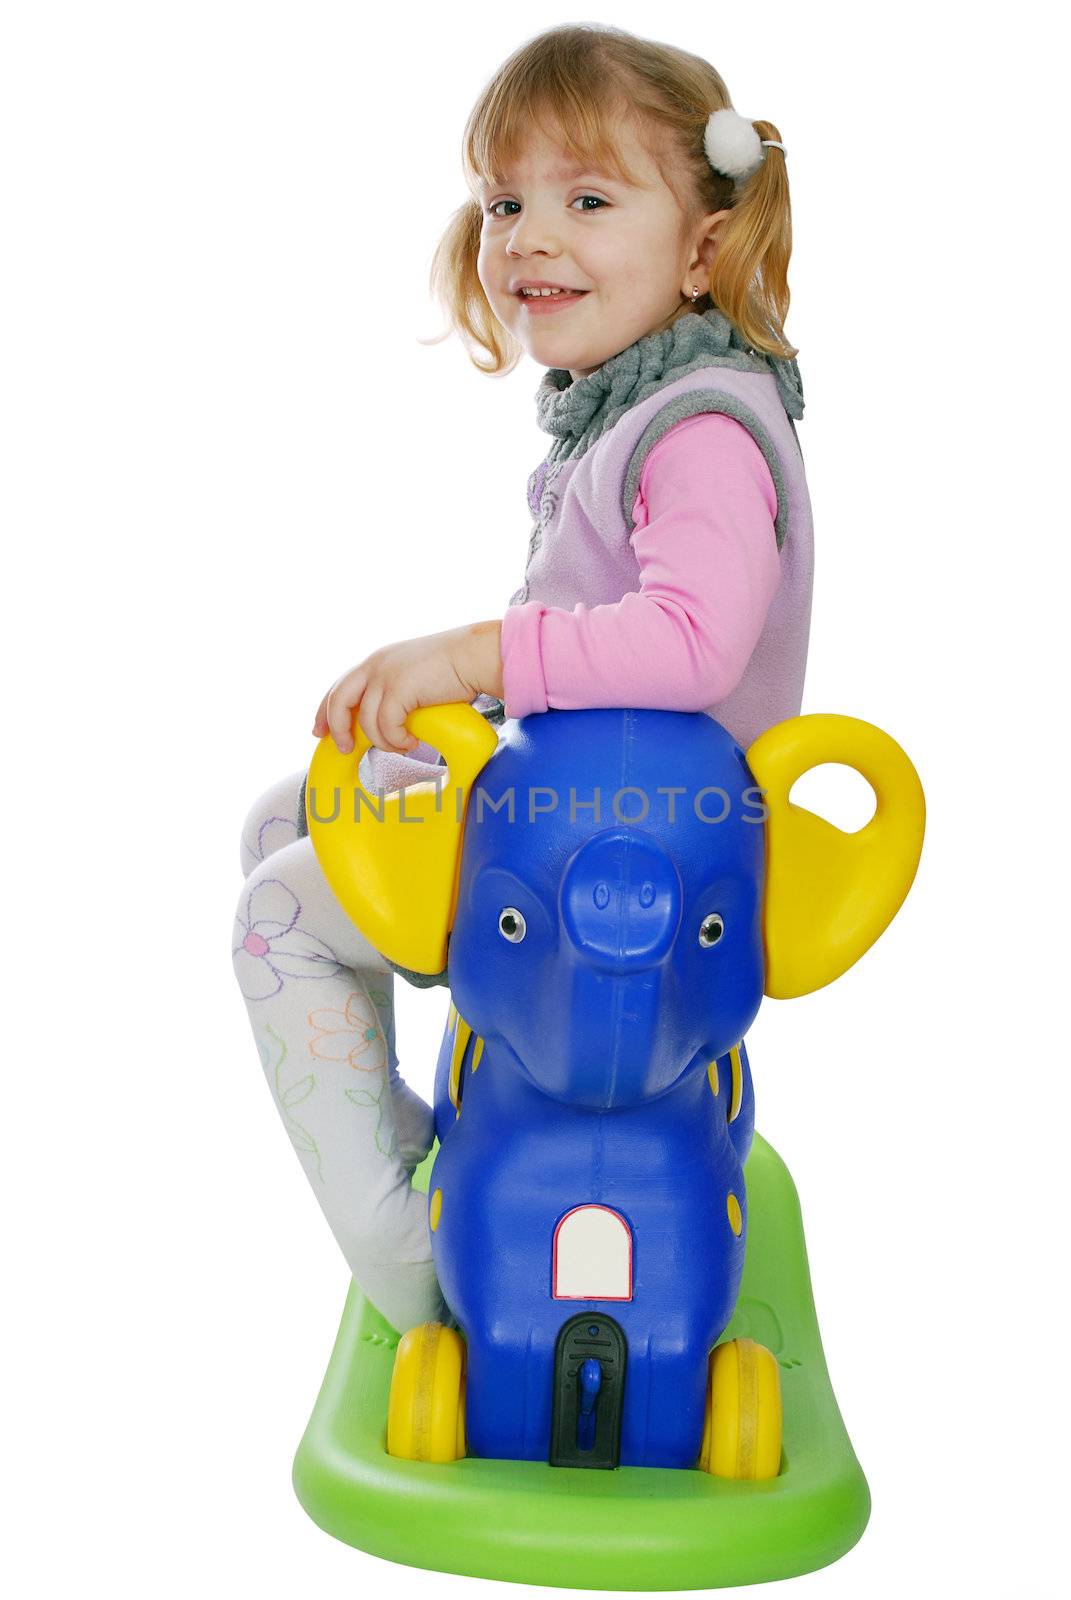 Little girl with elephant toy studio shot